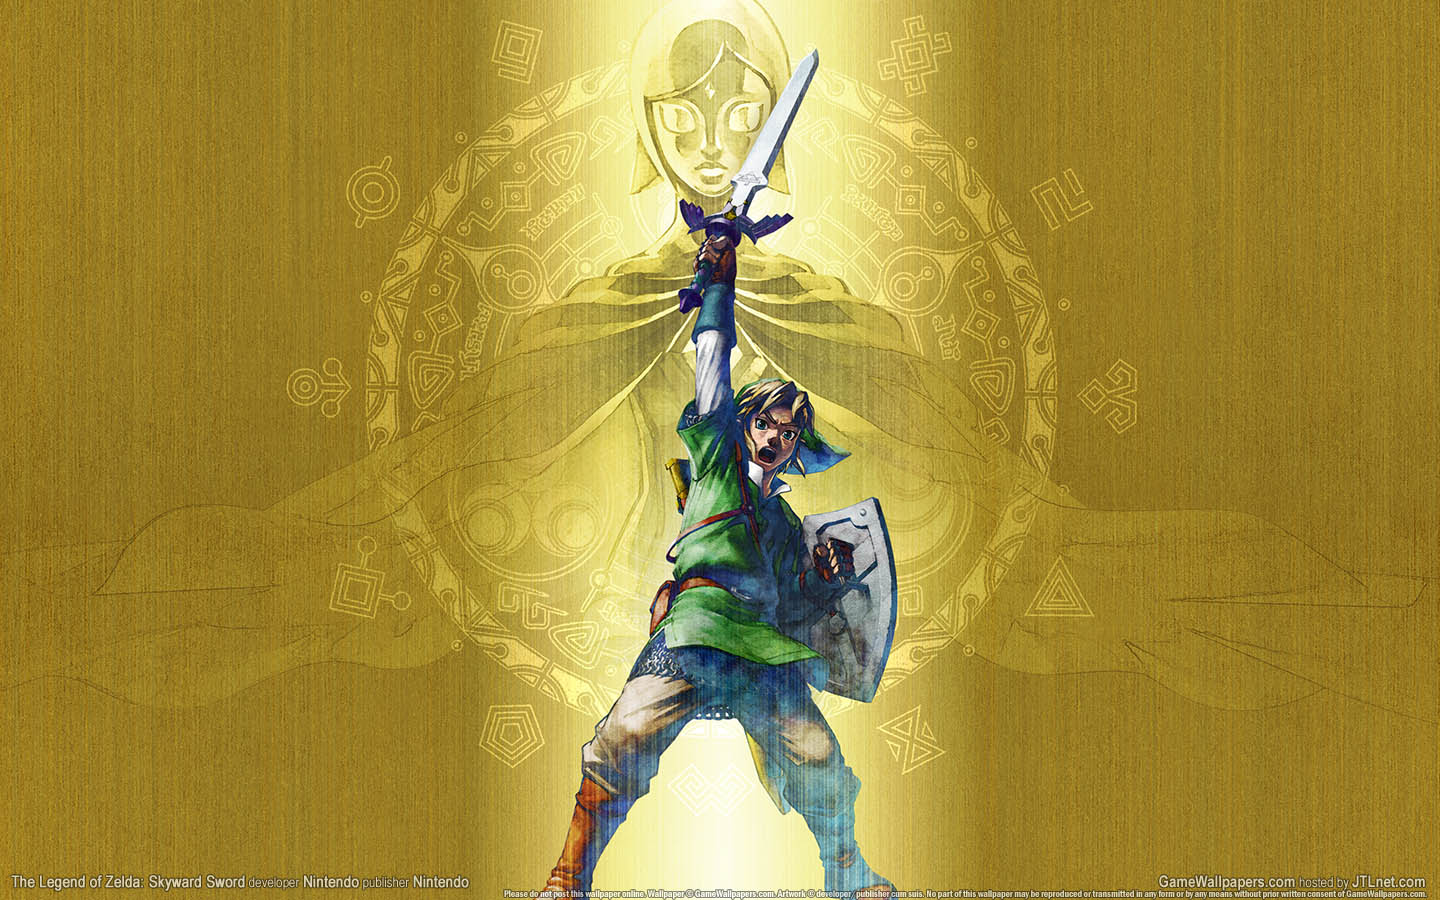 Armario Geek: [Wallpaper] The Legend of Zelda Skyward Sword